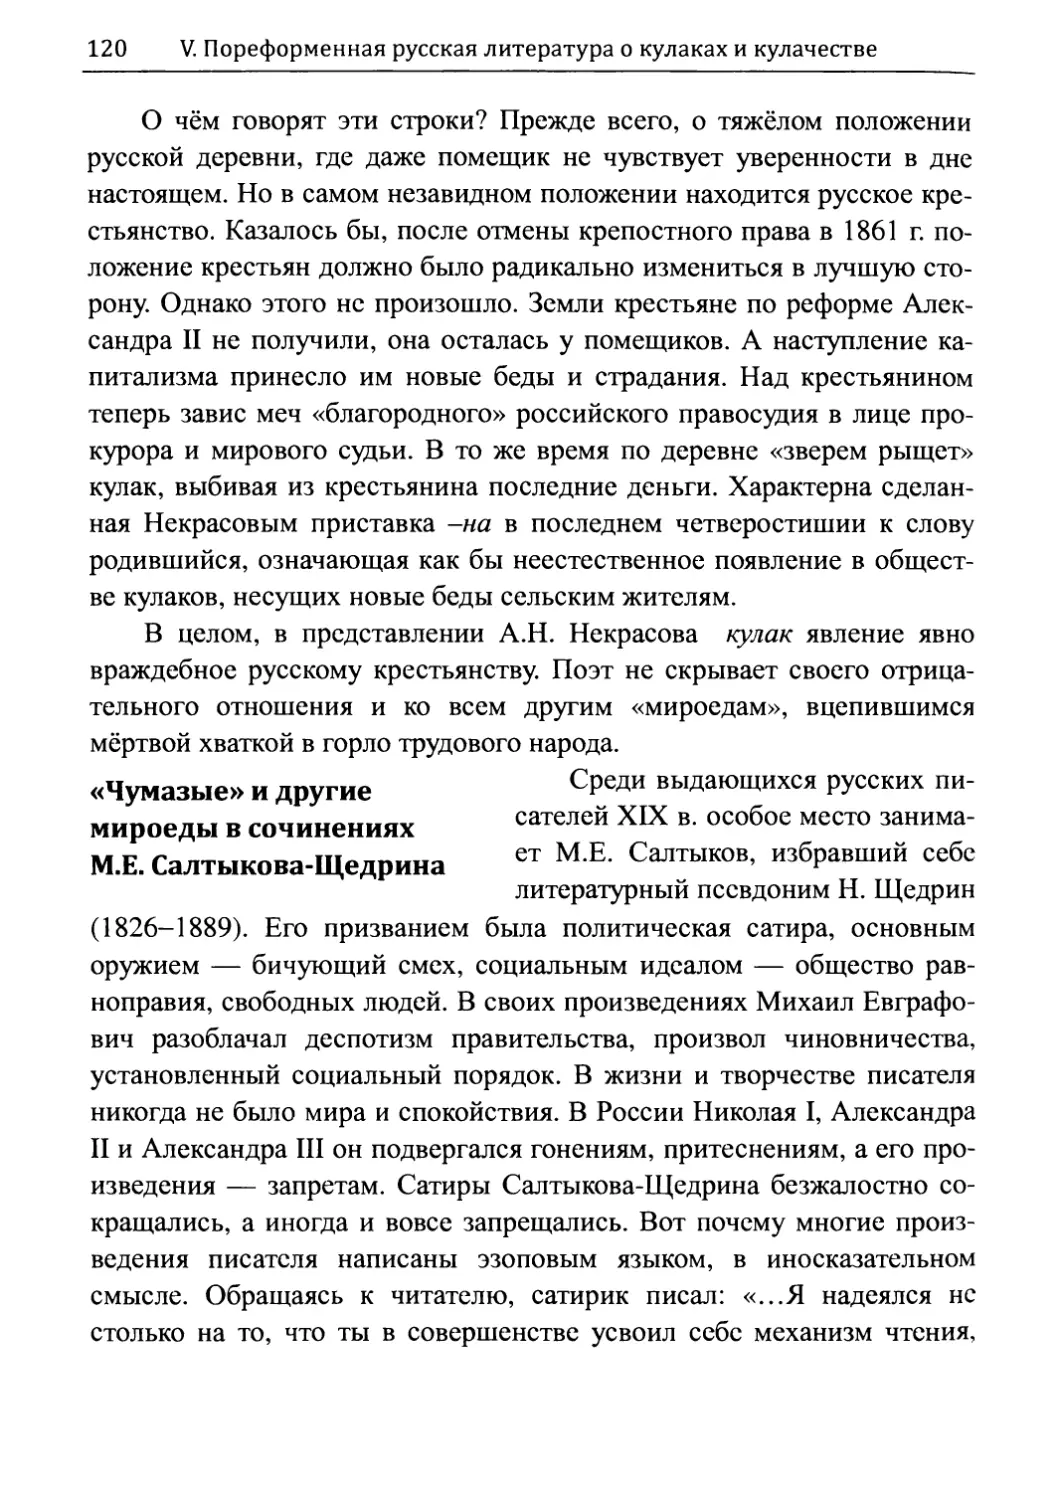 «Чумазые» и другие мироеды в сочинениях М.Е. Салтыкова-Щедрина